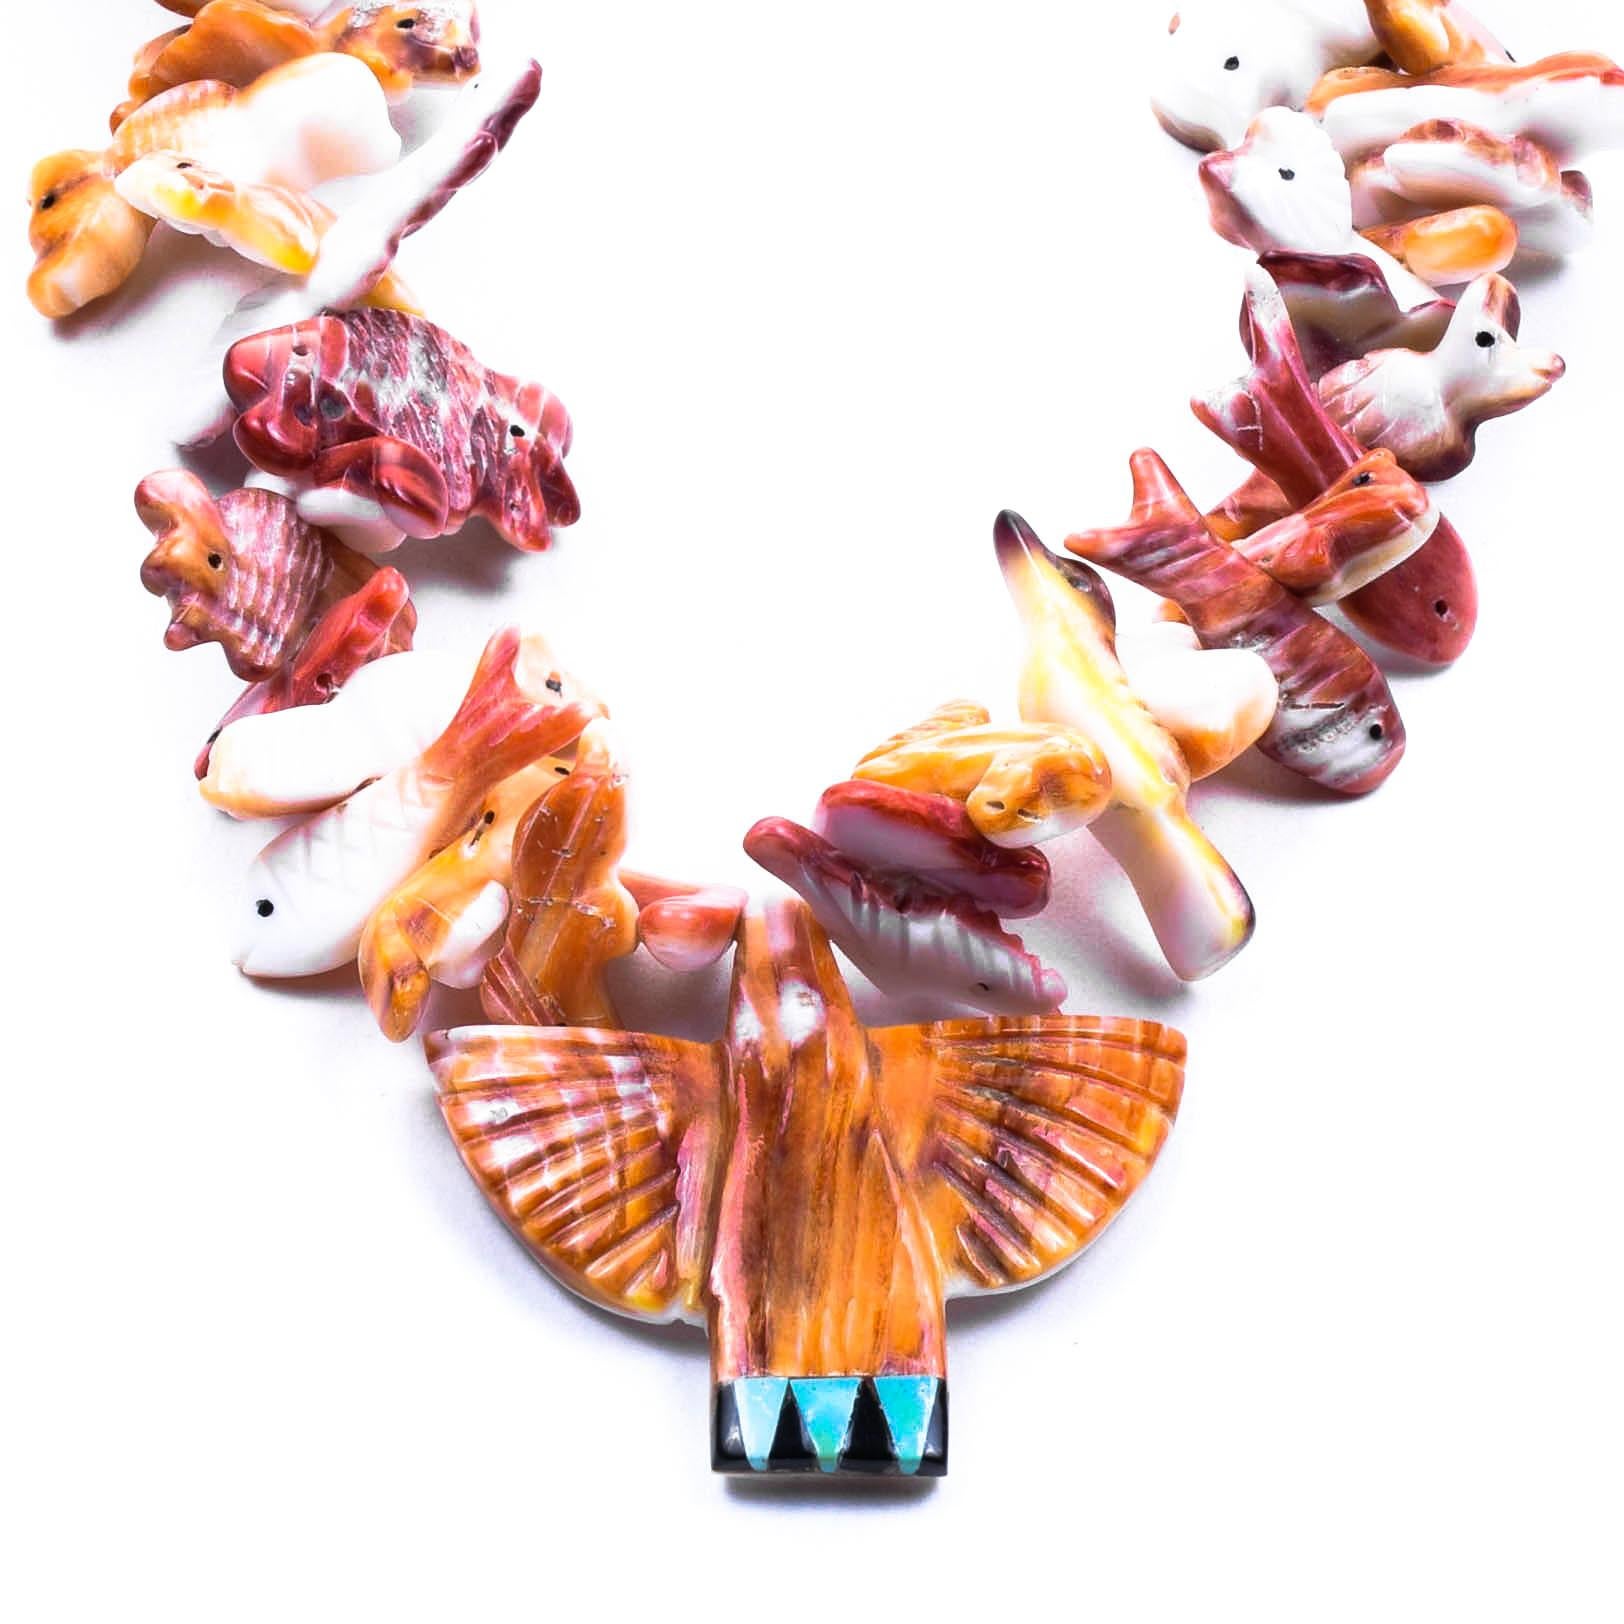 Magnifique collier fétiche Zuni avec divers animaux, sculpté à la main dans une huître épineuse, avec un centre d'oiseau-tonnerre avec turquoise.

PÉRIODE : après 1950

ORIGINE : Zuni, Sud-Ouest

TAILLE : Longueur : 33 1/4